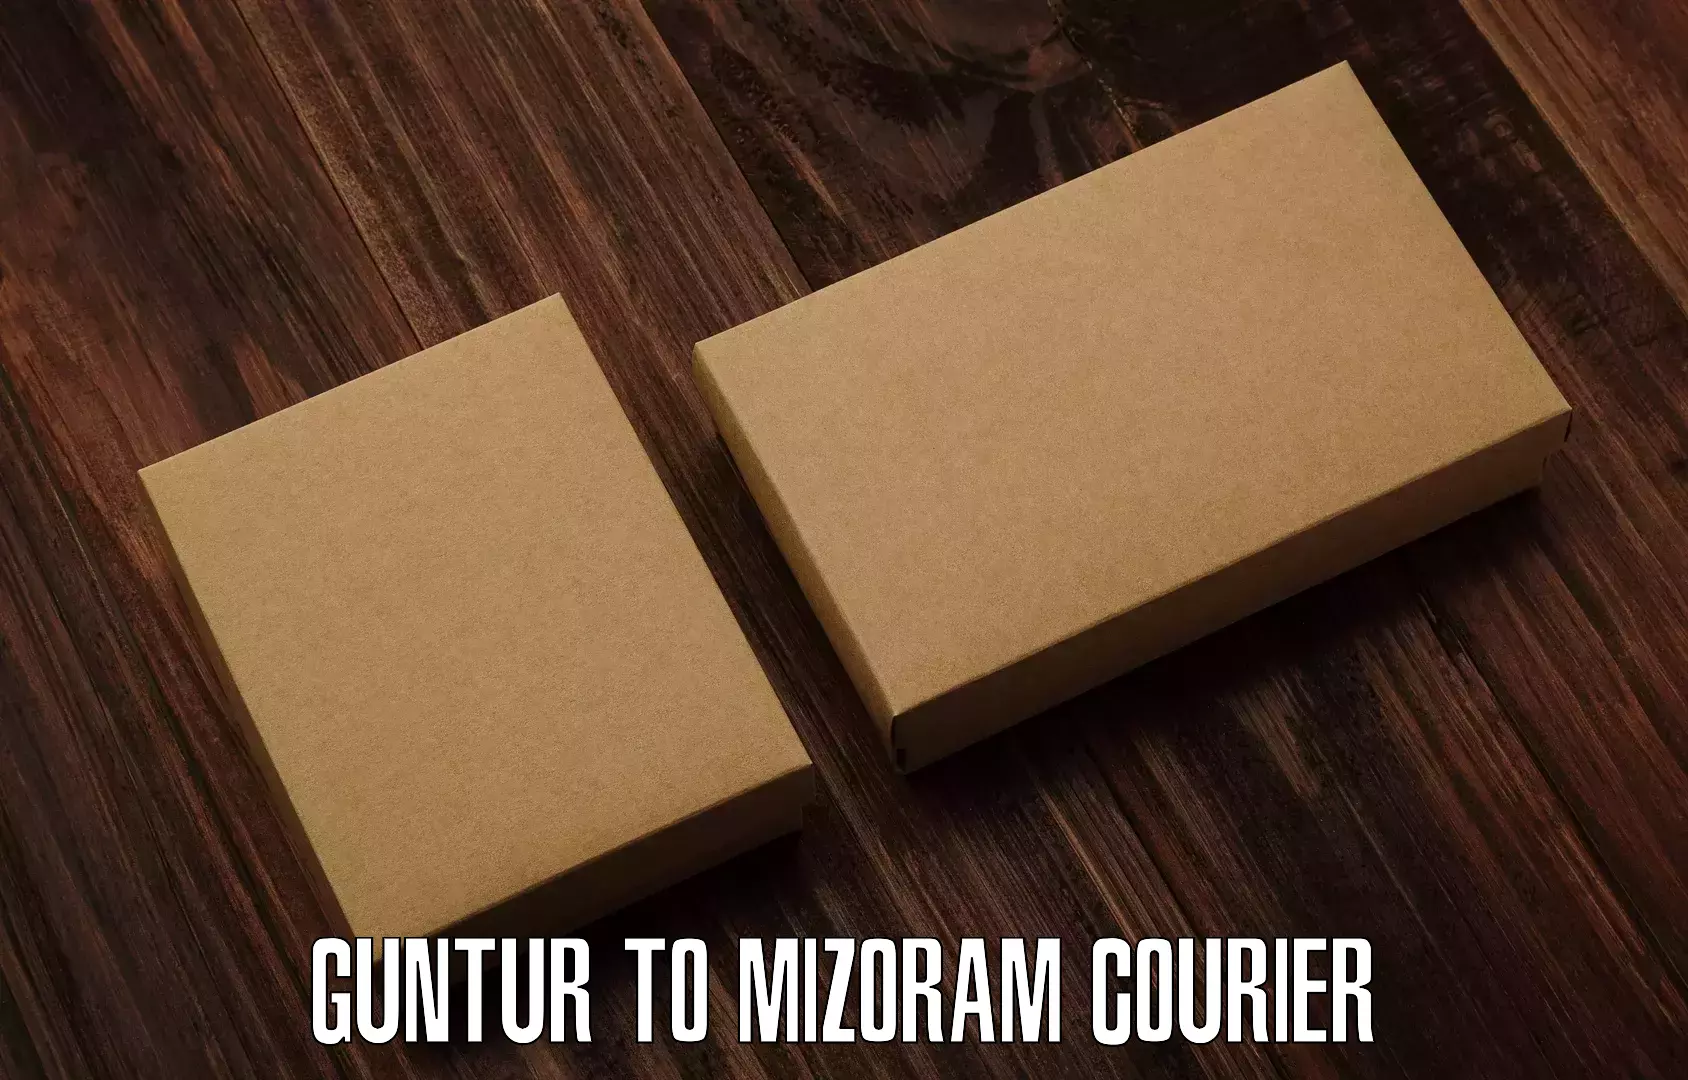 Cargo delivery service Guntur to NIT Aizawl